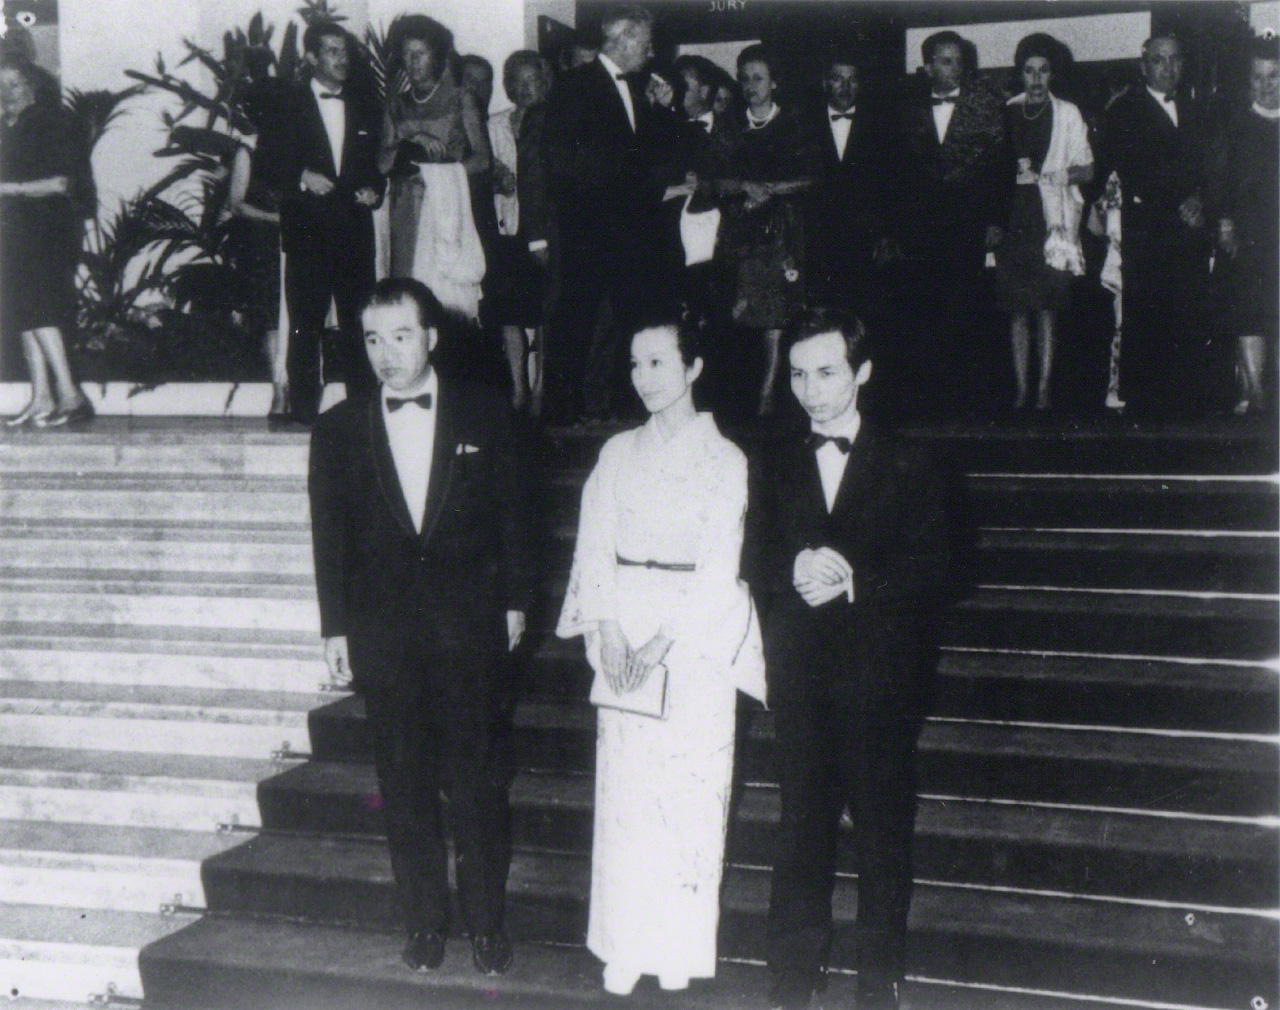 عندما حصل فيلم (كوايدان) على جائزة لجنة التحكيم الخاصة في مهرجان كان السينمائي الدولي في مايو/ آيار 1965. حضر تاكيميتسو (الذي لحن الموسيقى التصويرية) الحفل مع المخرج كوباياشي ماساكي (إلى اليسار) والممثلة أراتاما ميتشيو